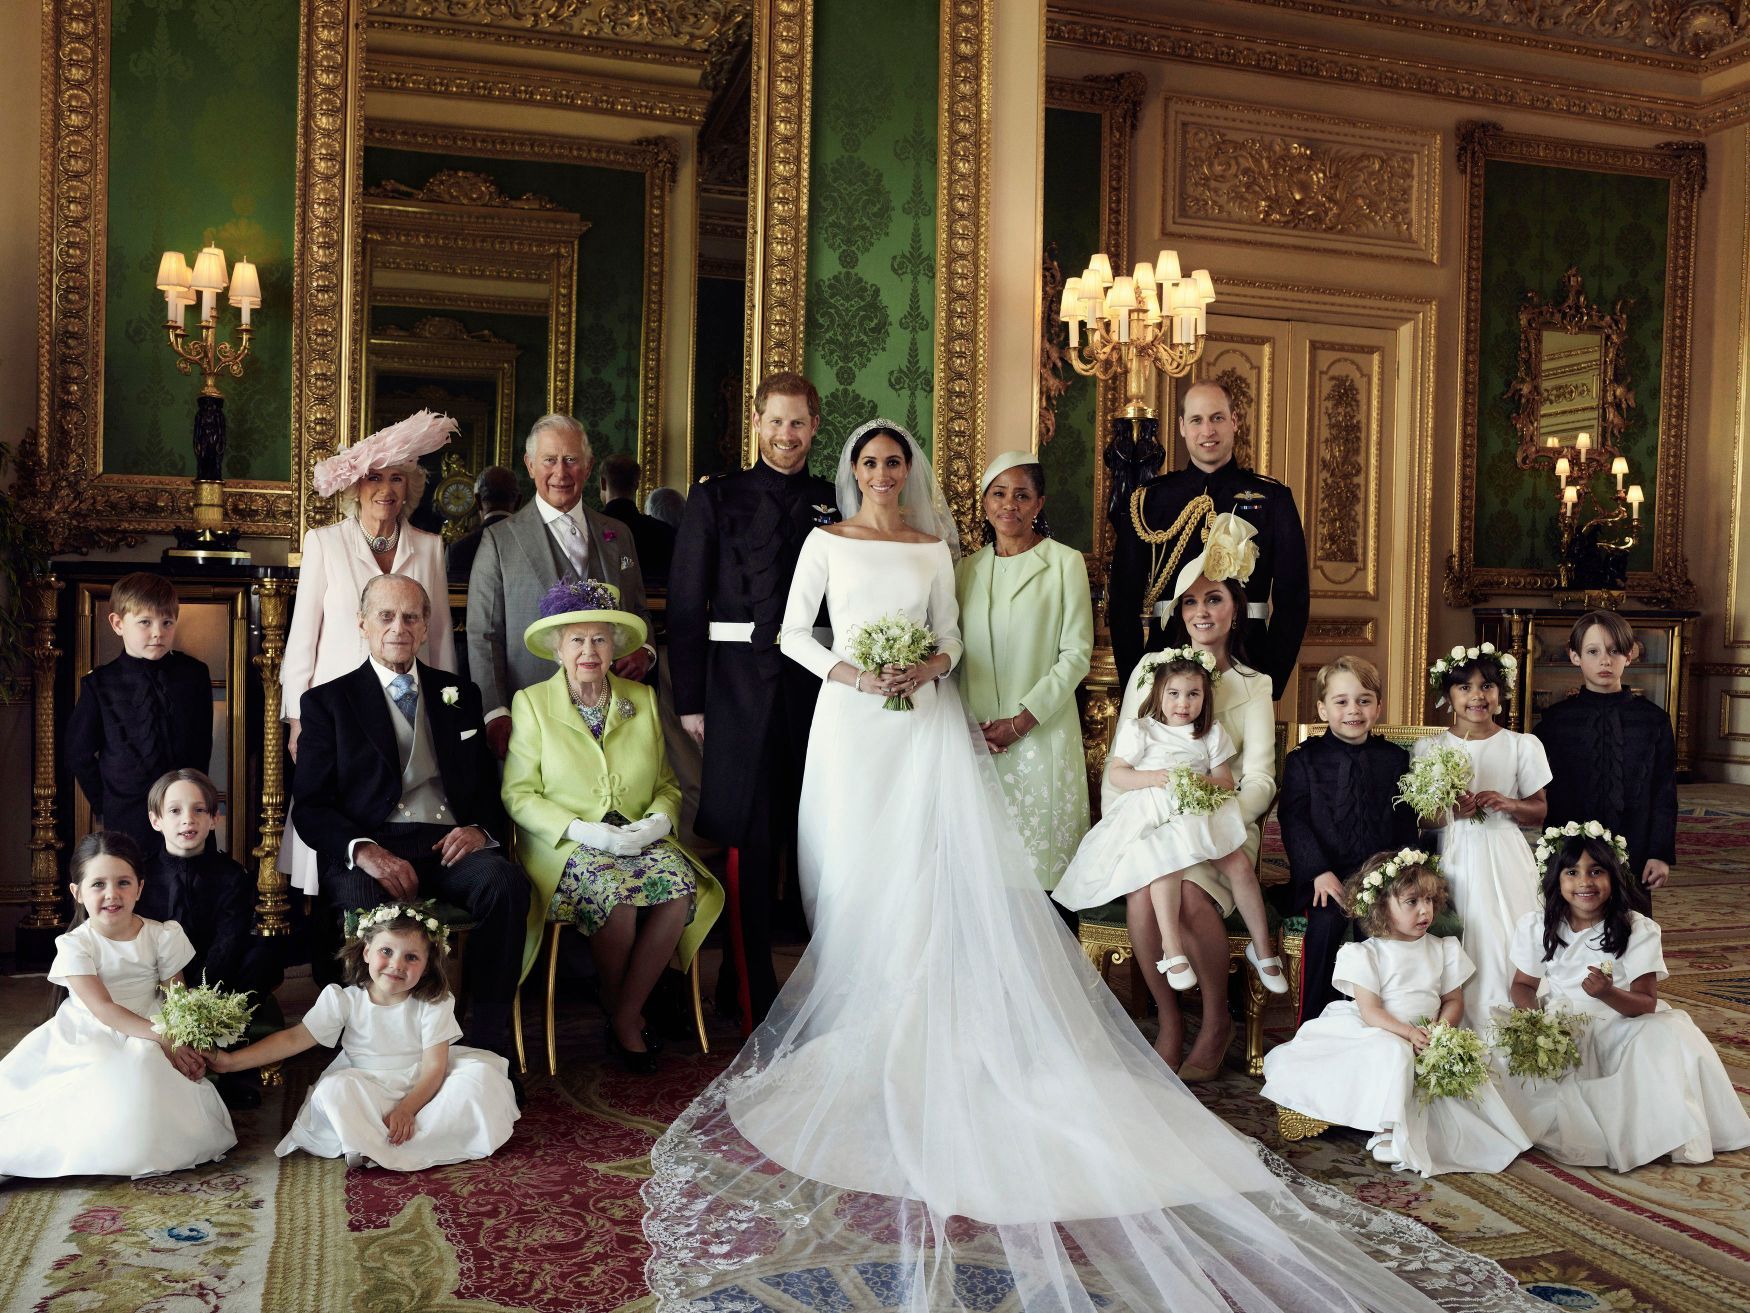 Fotogalerie / Královská svatba připomenutí / Oficiální svatební fotografie královské rodiny  / Princ Harry a Meghan Merkle / ČTK / 22. 5. 2018 / 8